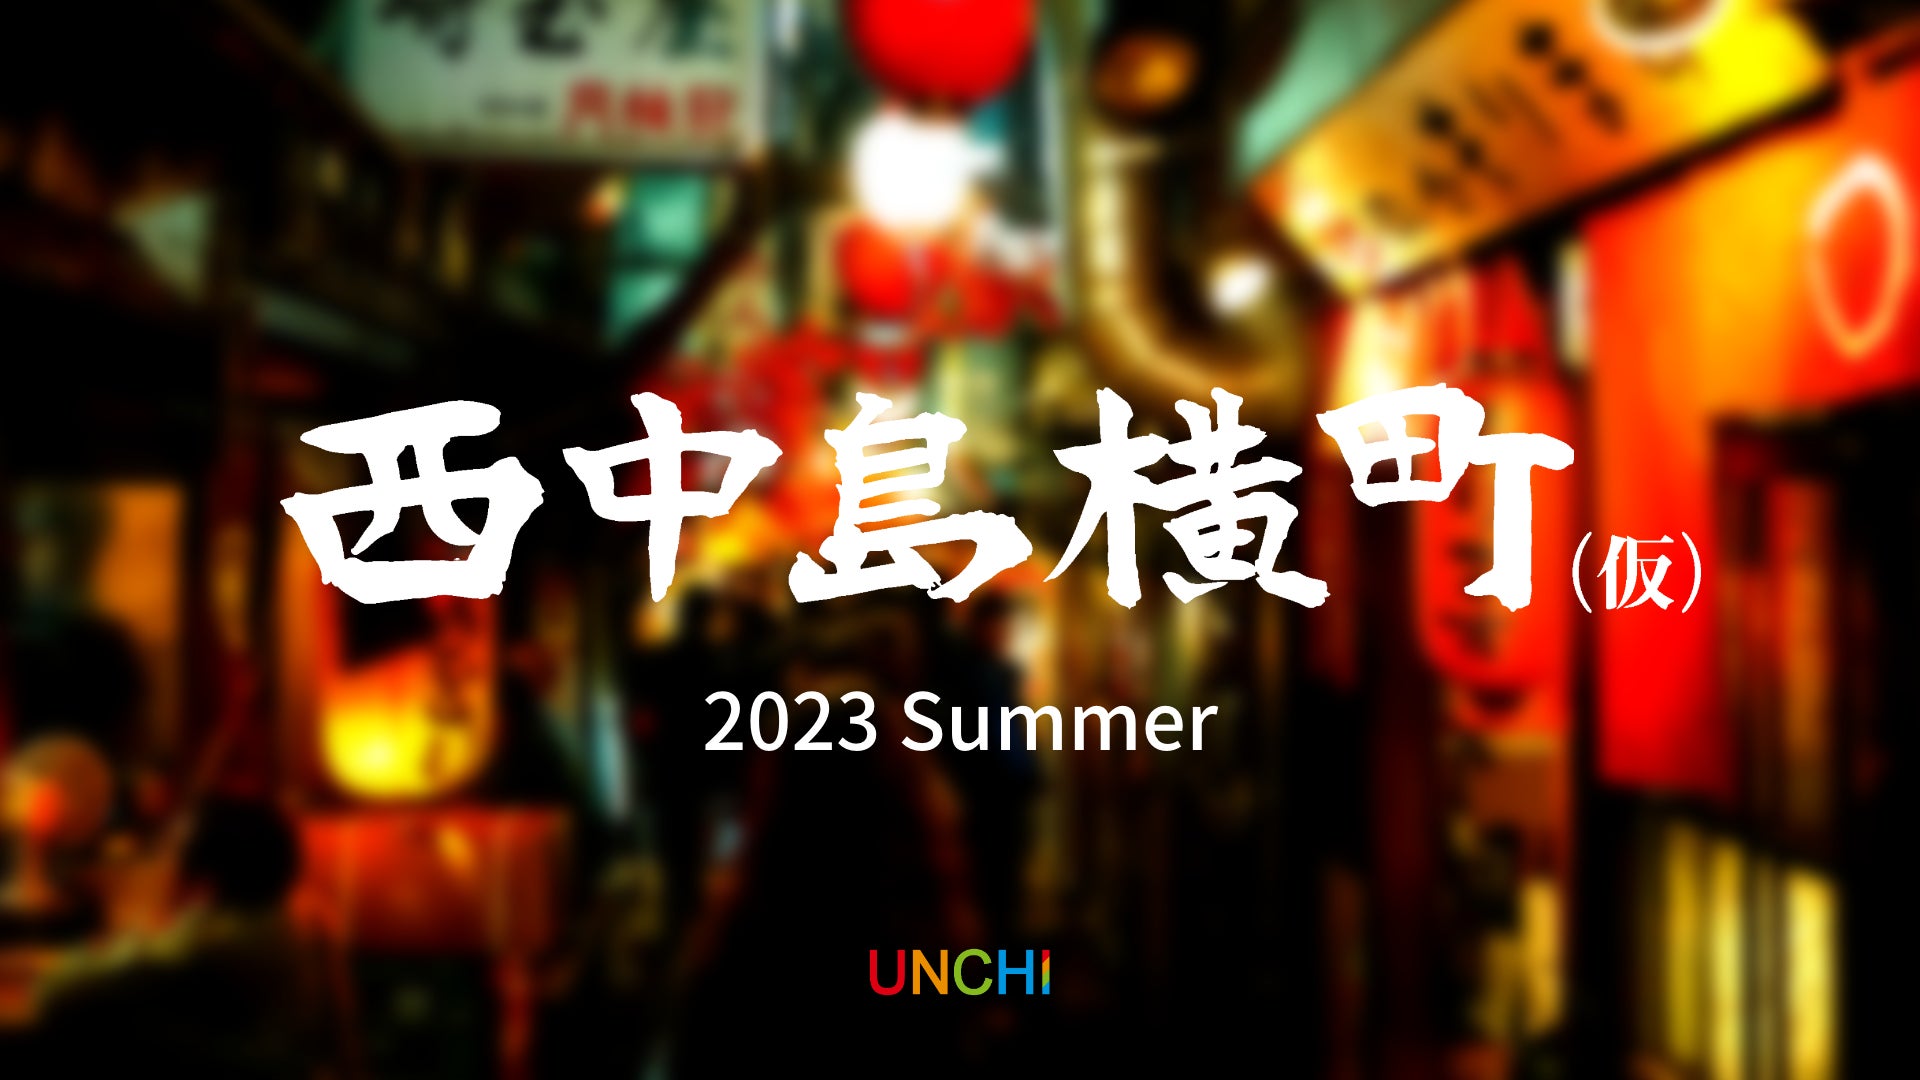 夏の十和田湖で、あなたの想いを添えた、打ち上げ花火をプレゼントしませんか。